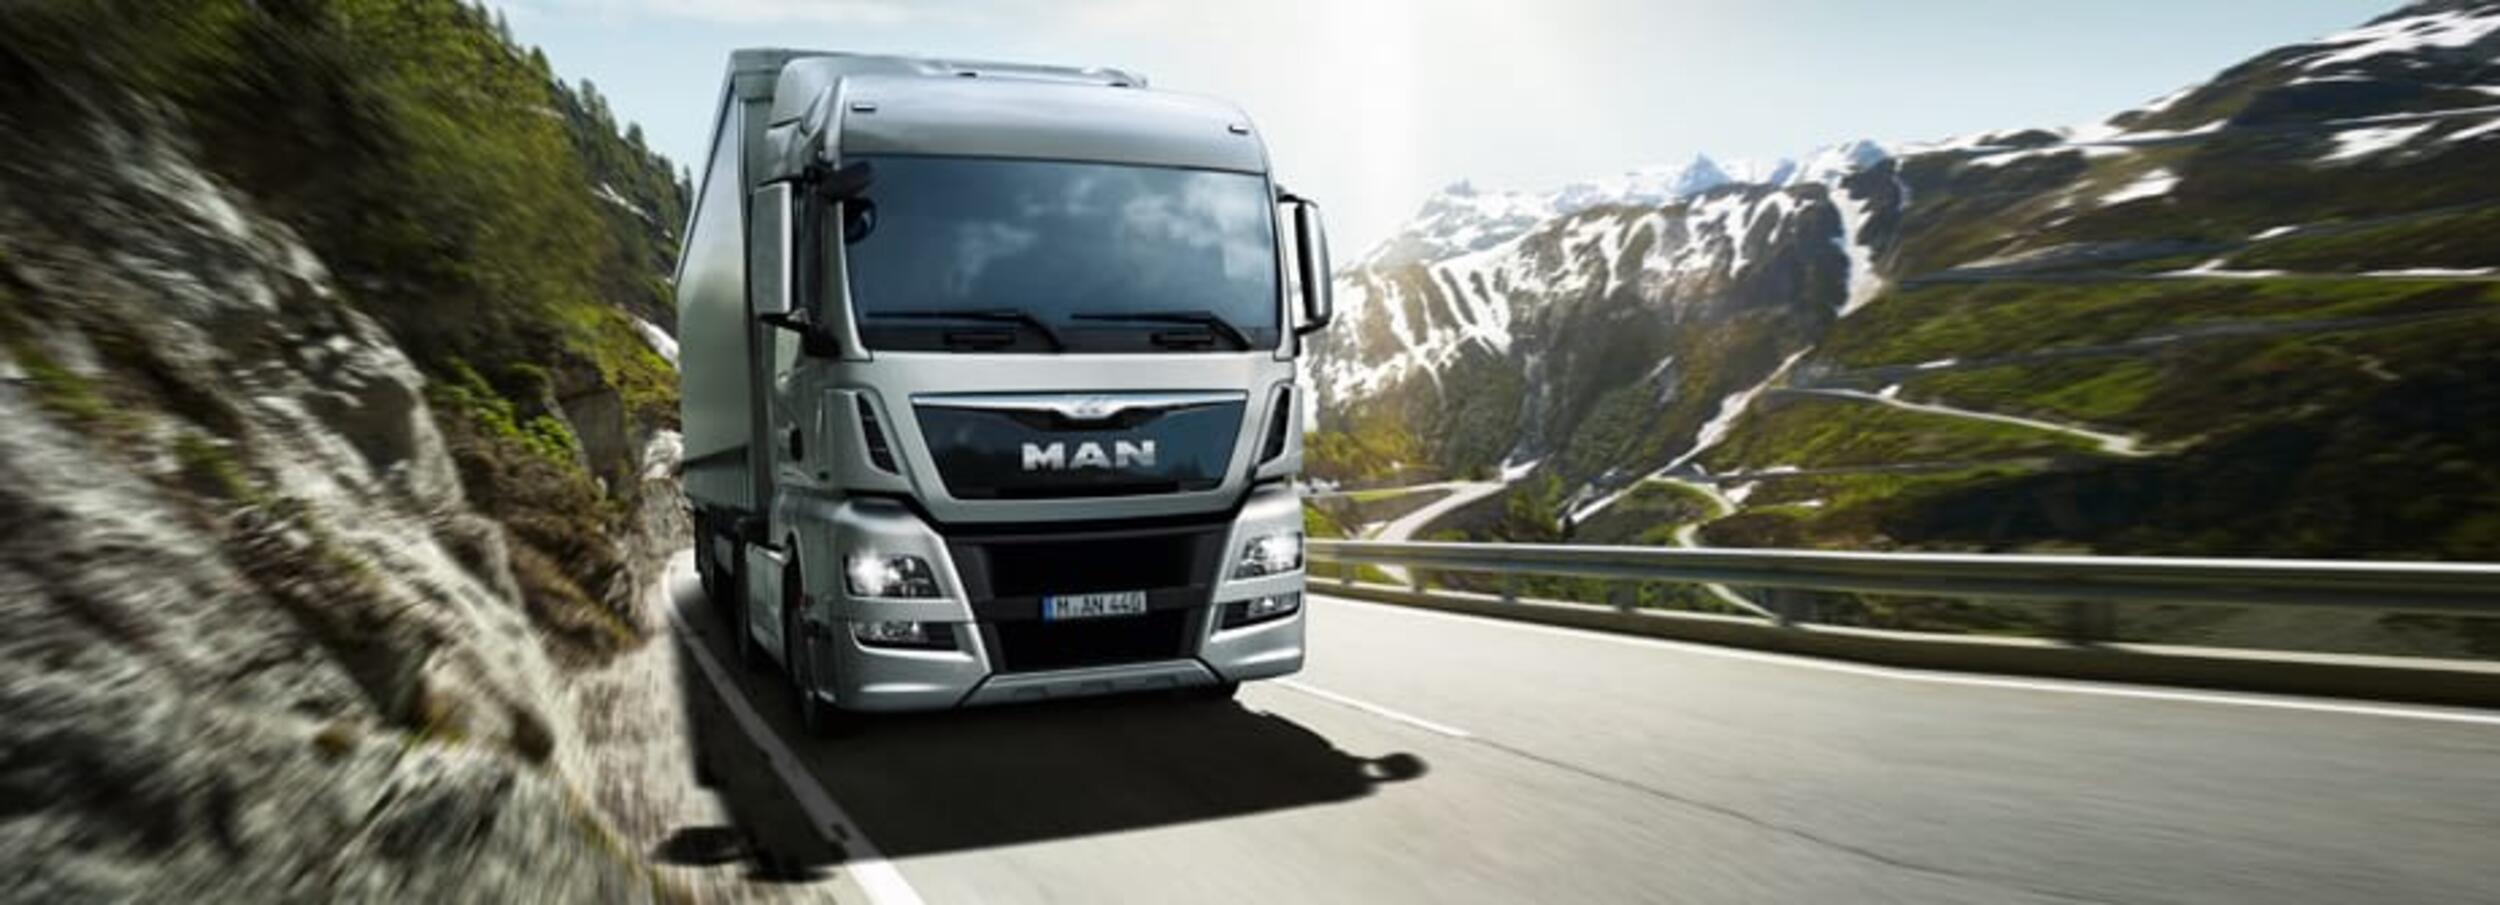 MAN Servicepartner
Als Servicepartner der MAN Truck & Bus Deutschland GmbH gewährleisten wir einen ausgezeichneten Service und Ersatzteilevertrieb rund um die Marke MAN und auch anderer Marken.